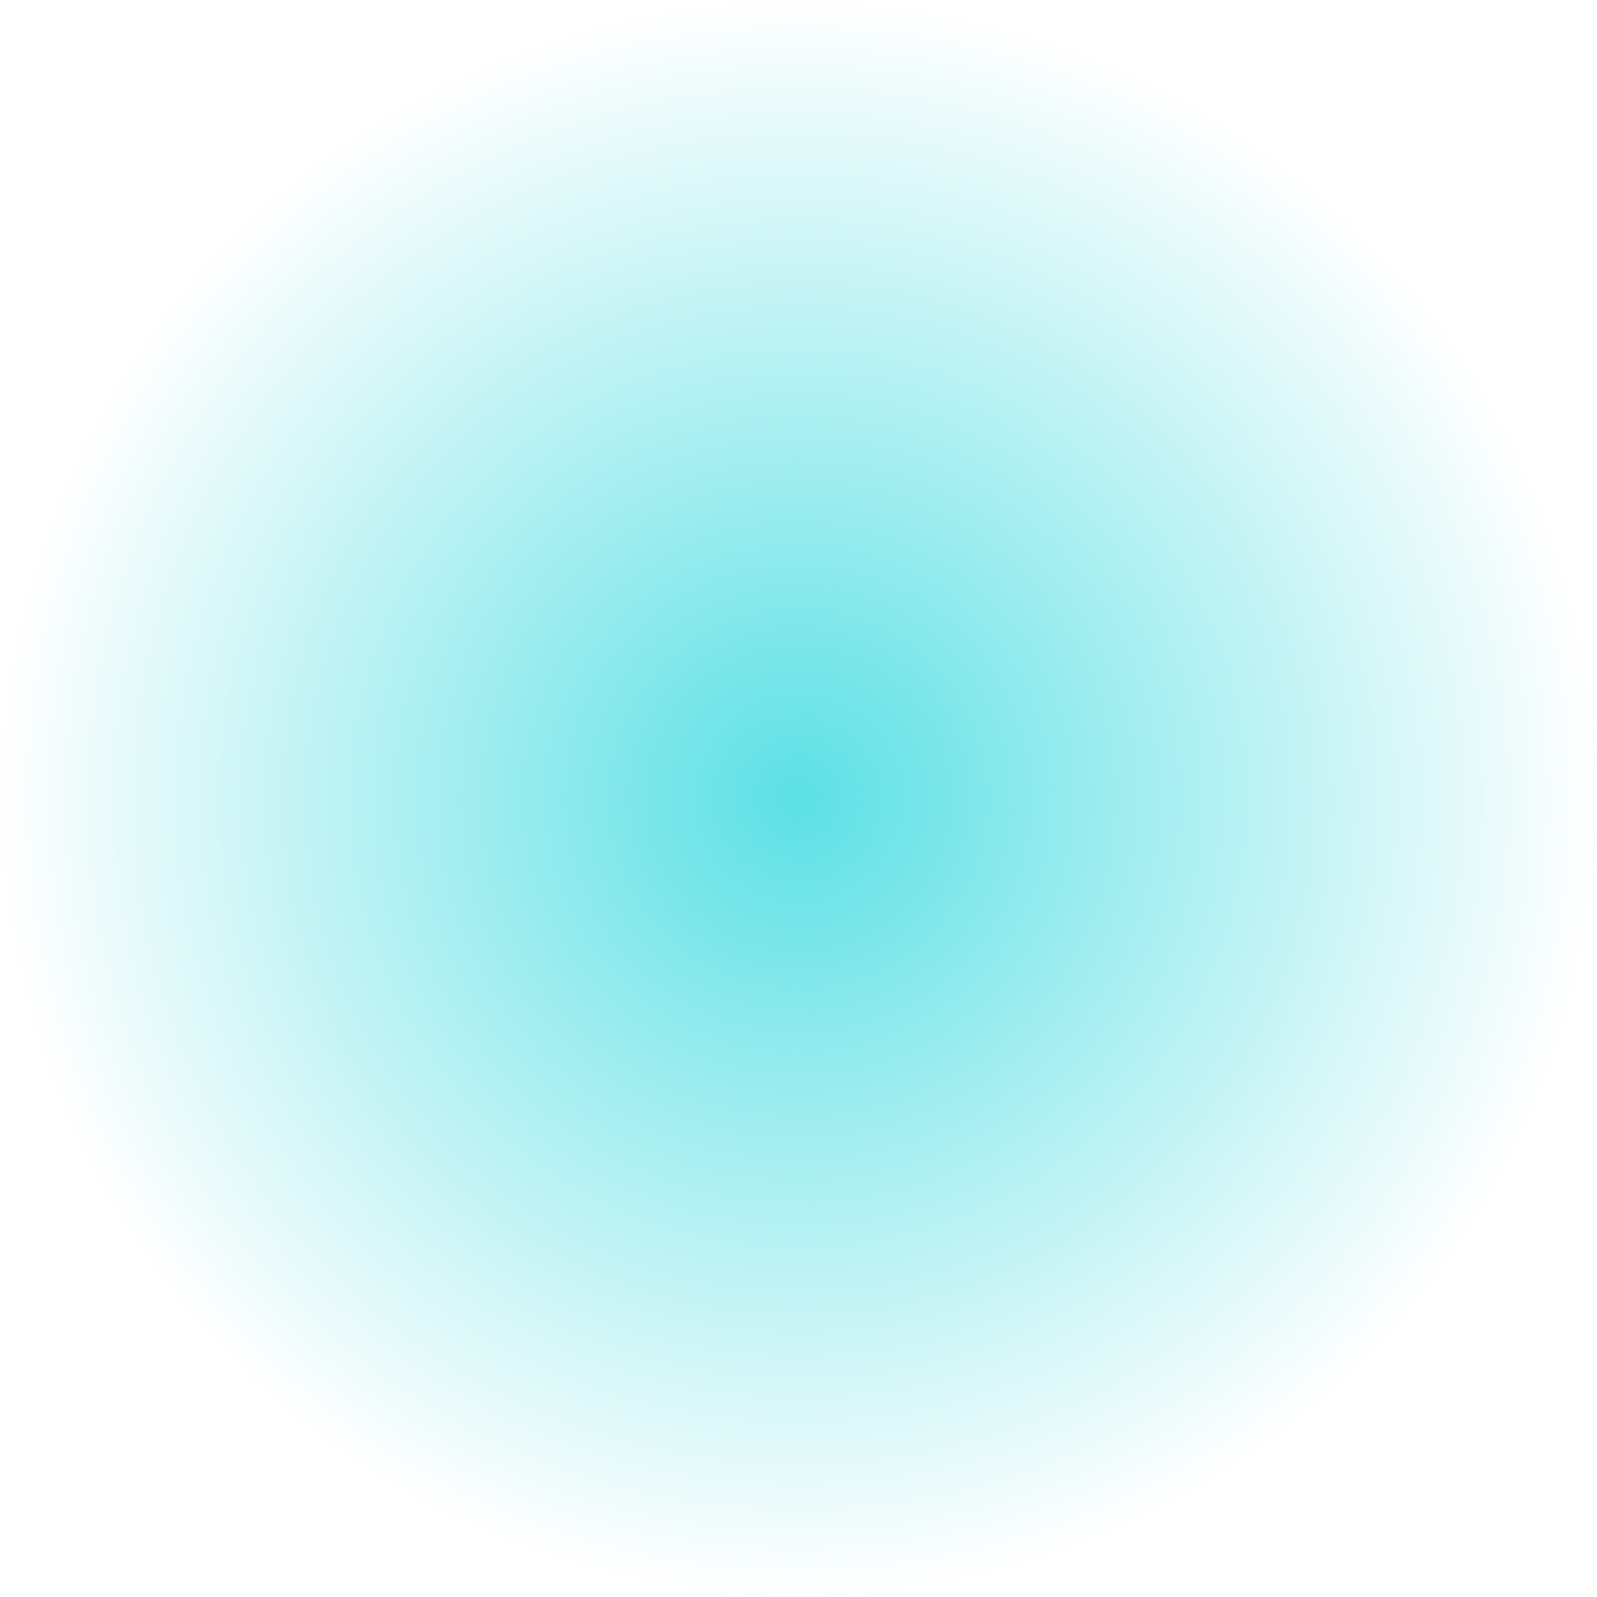 Blue green blur circle. Neon round frame. Shining circle ban